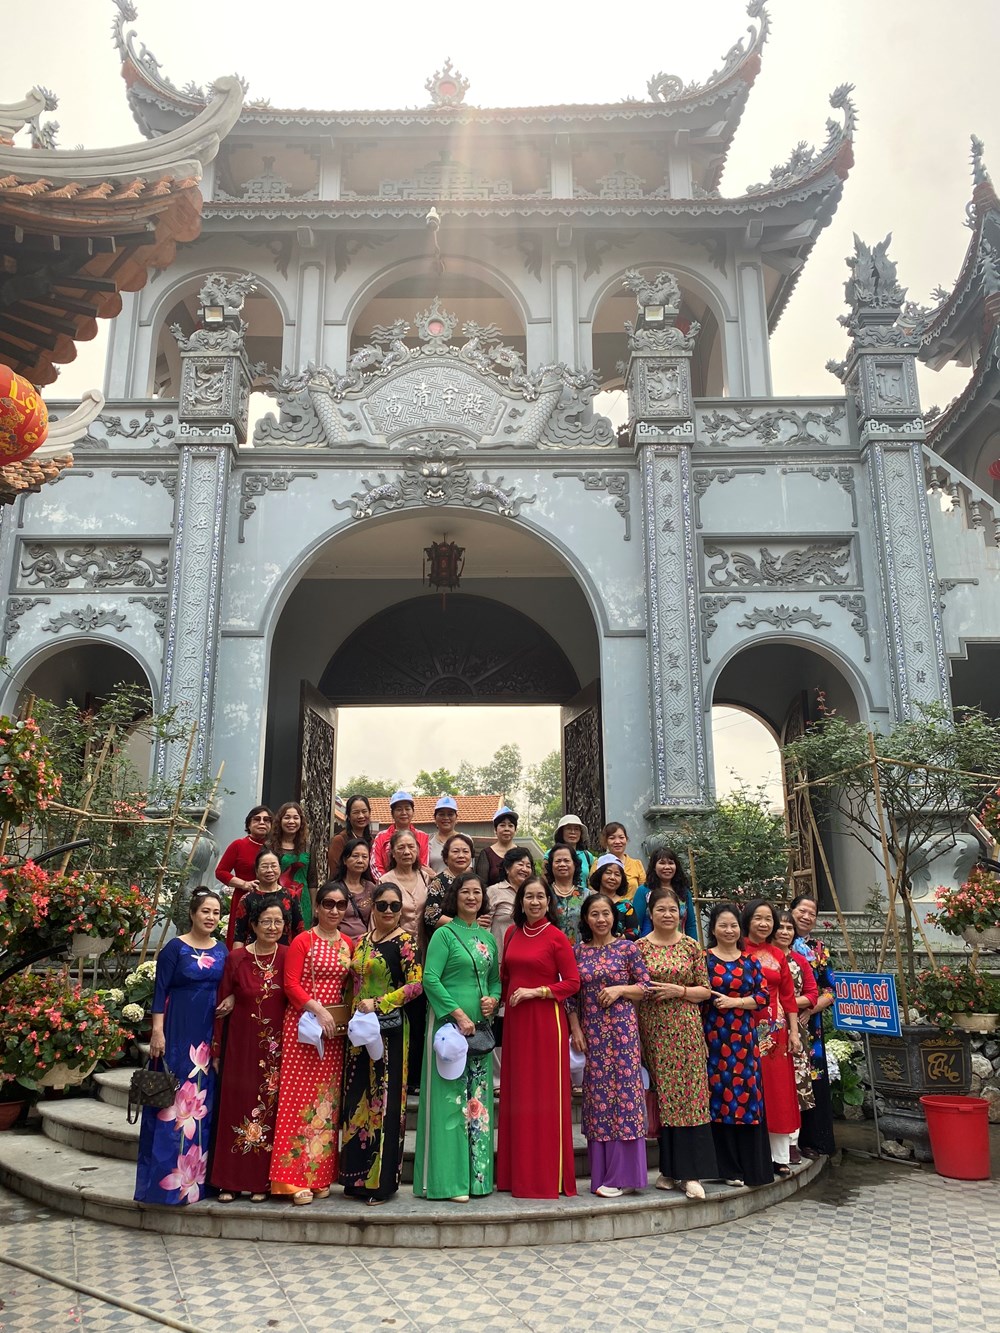  CLB Phụ nữ Thủ đô: Thăm quan tìm hiểu giá trị truyền thống lịch sử vùng Kinh Bắc - ảnh 2